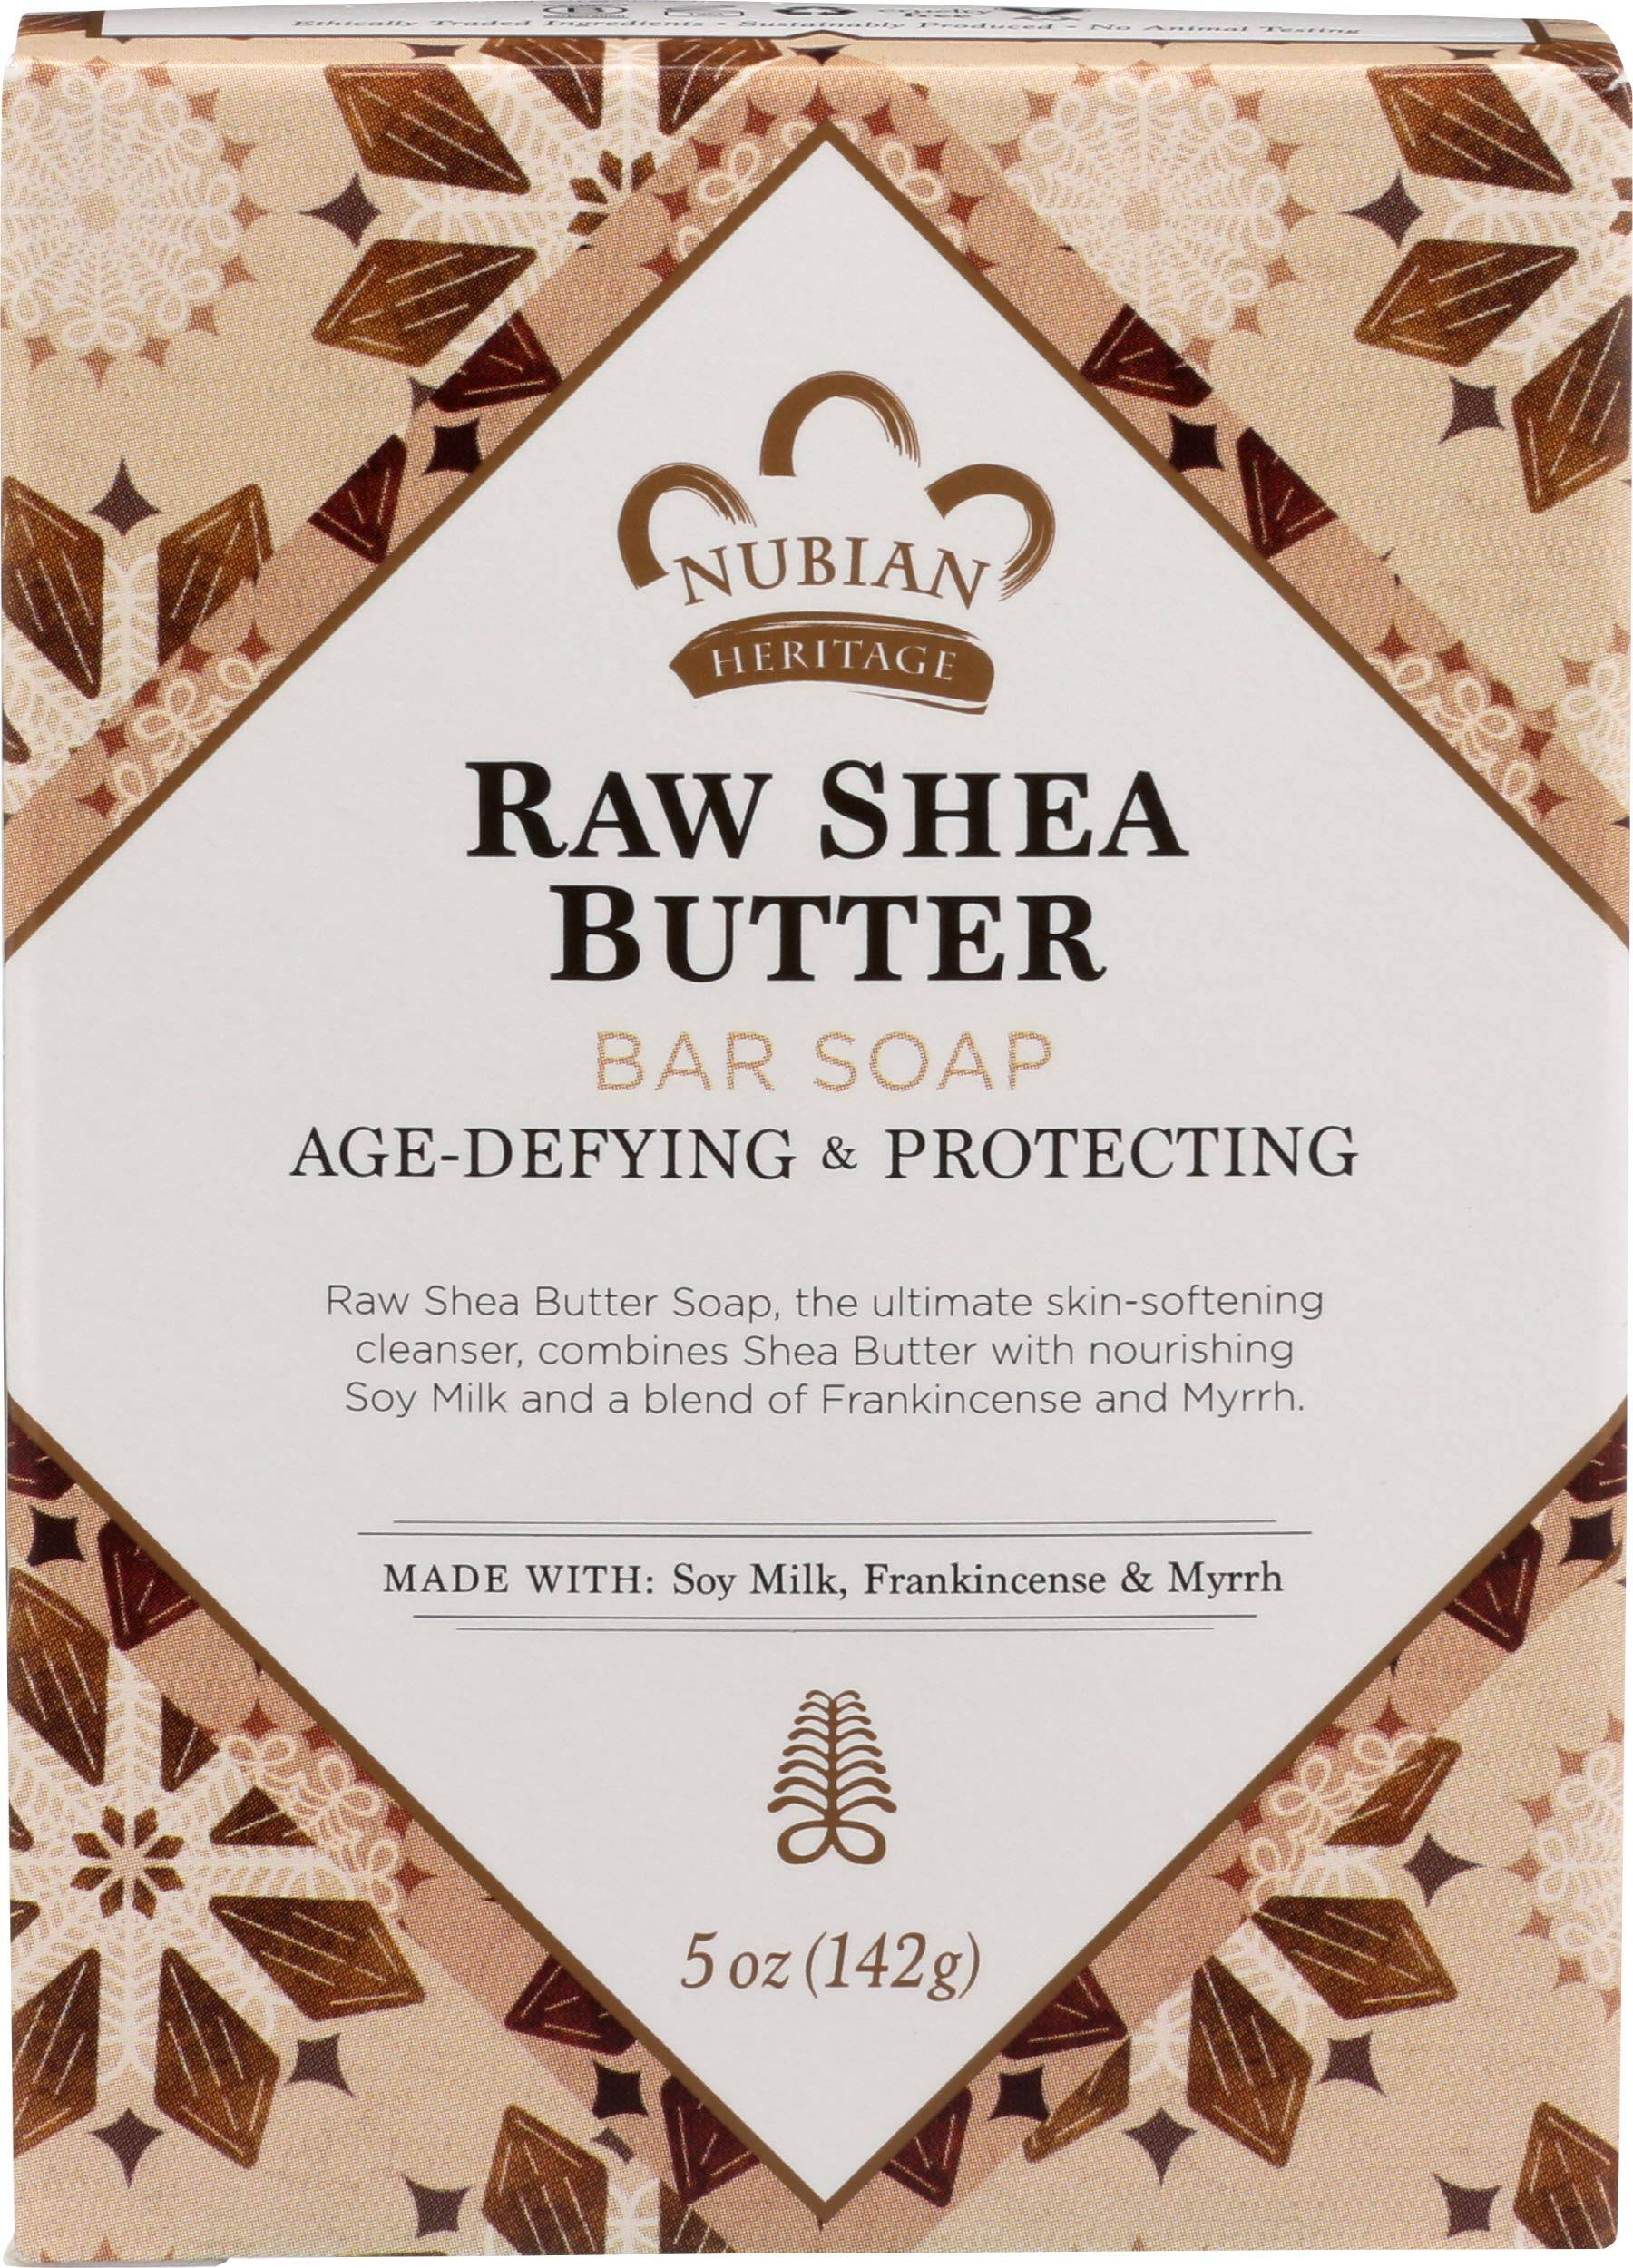 Nubian Bar Soap - Raw Shea Butter